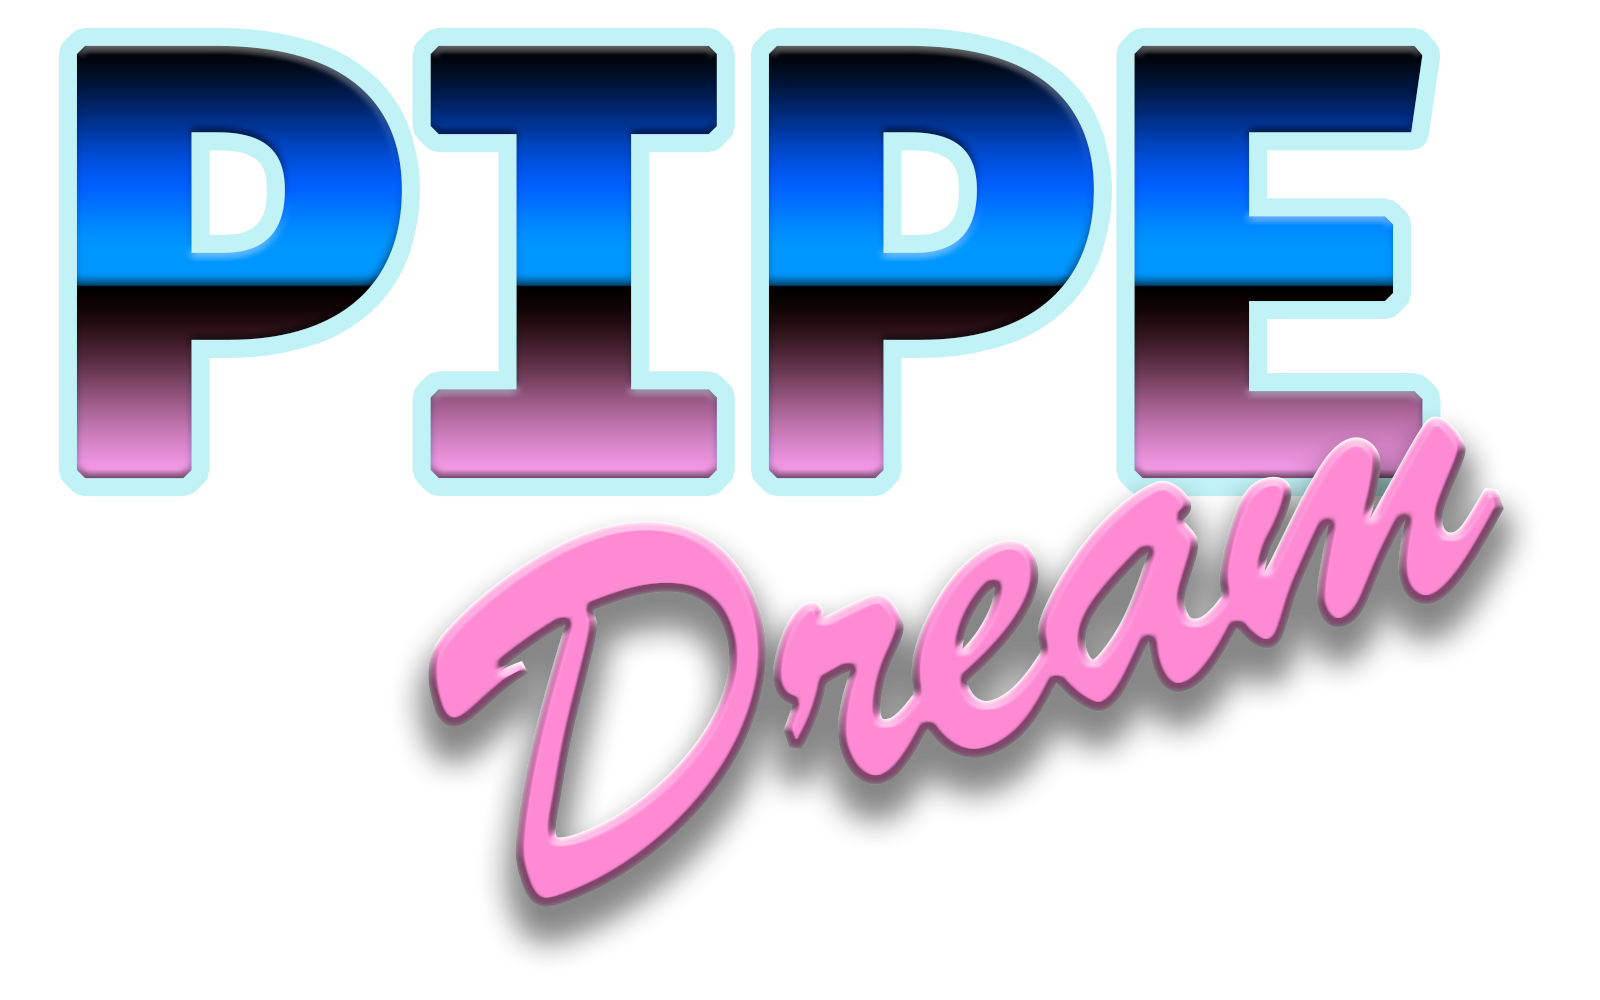 Pipe Dream (Prototype)